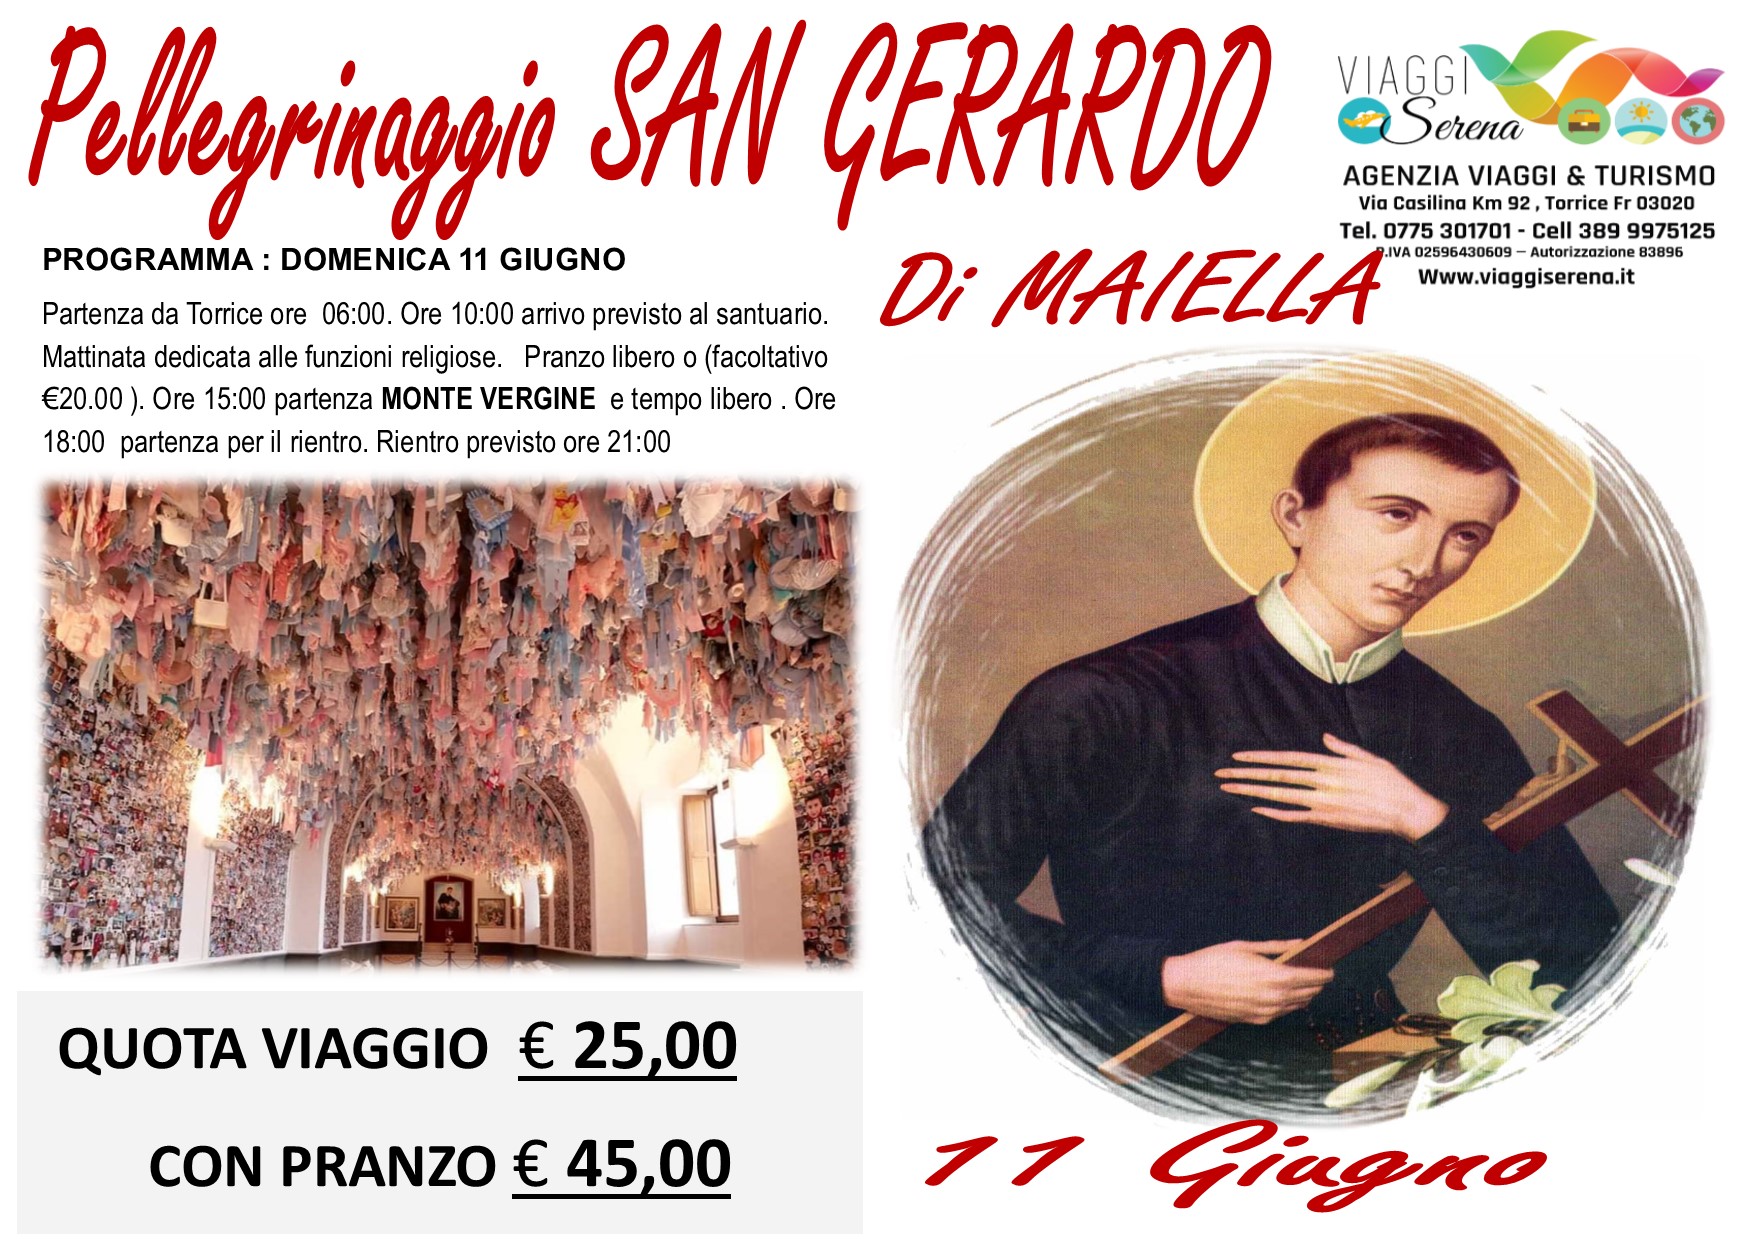 Viaggi di Gruppo: Pellegrinaggio San Gerardo di Maiella 11 Giugno €25,00